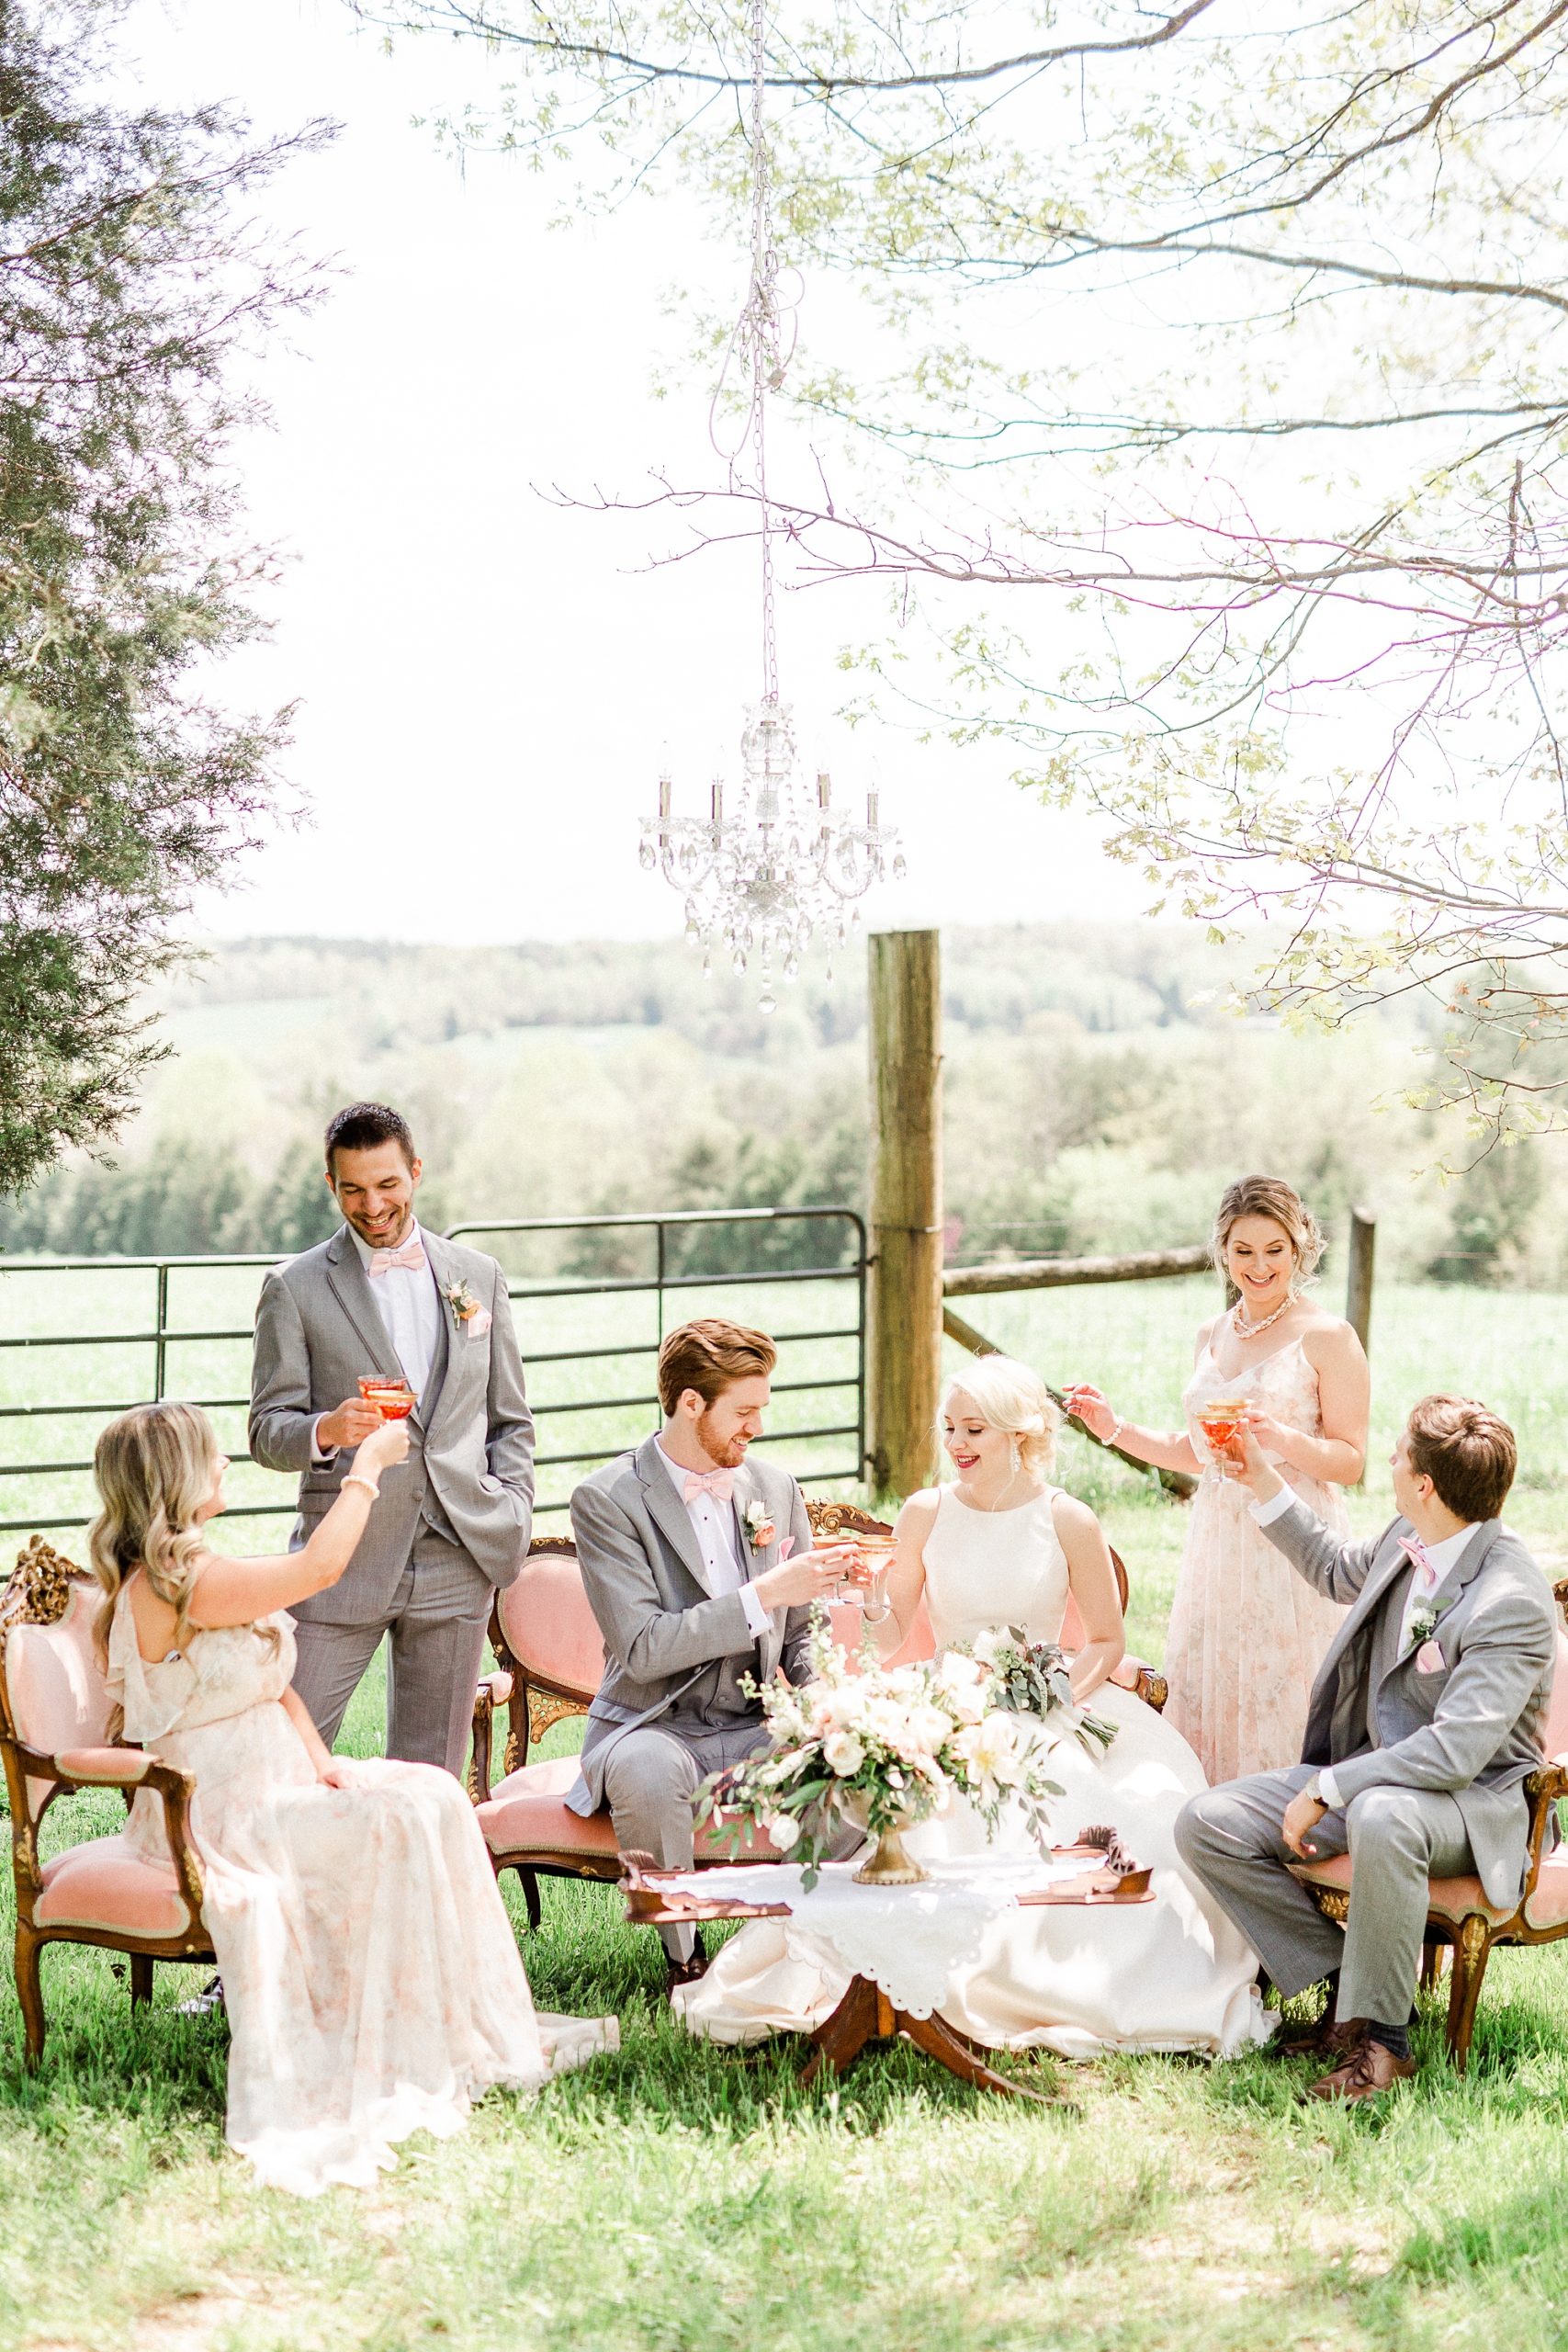 spring bridal party inspiration at Carolina Country Weddings